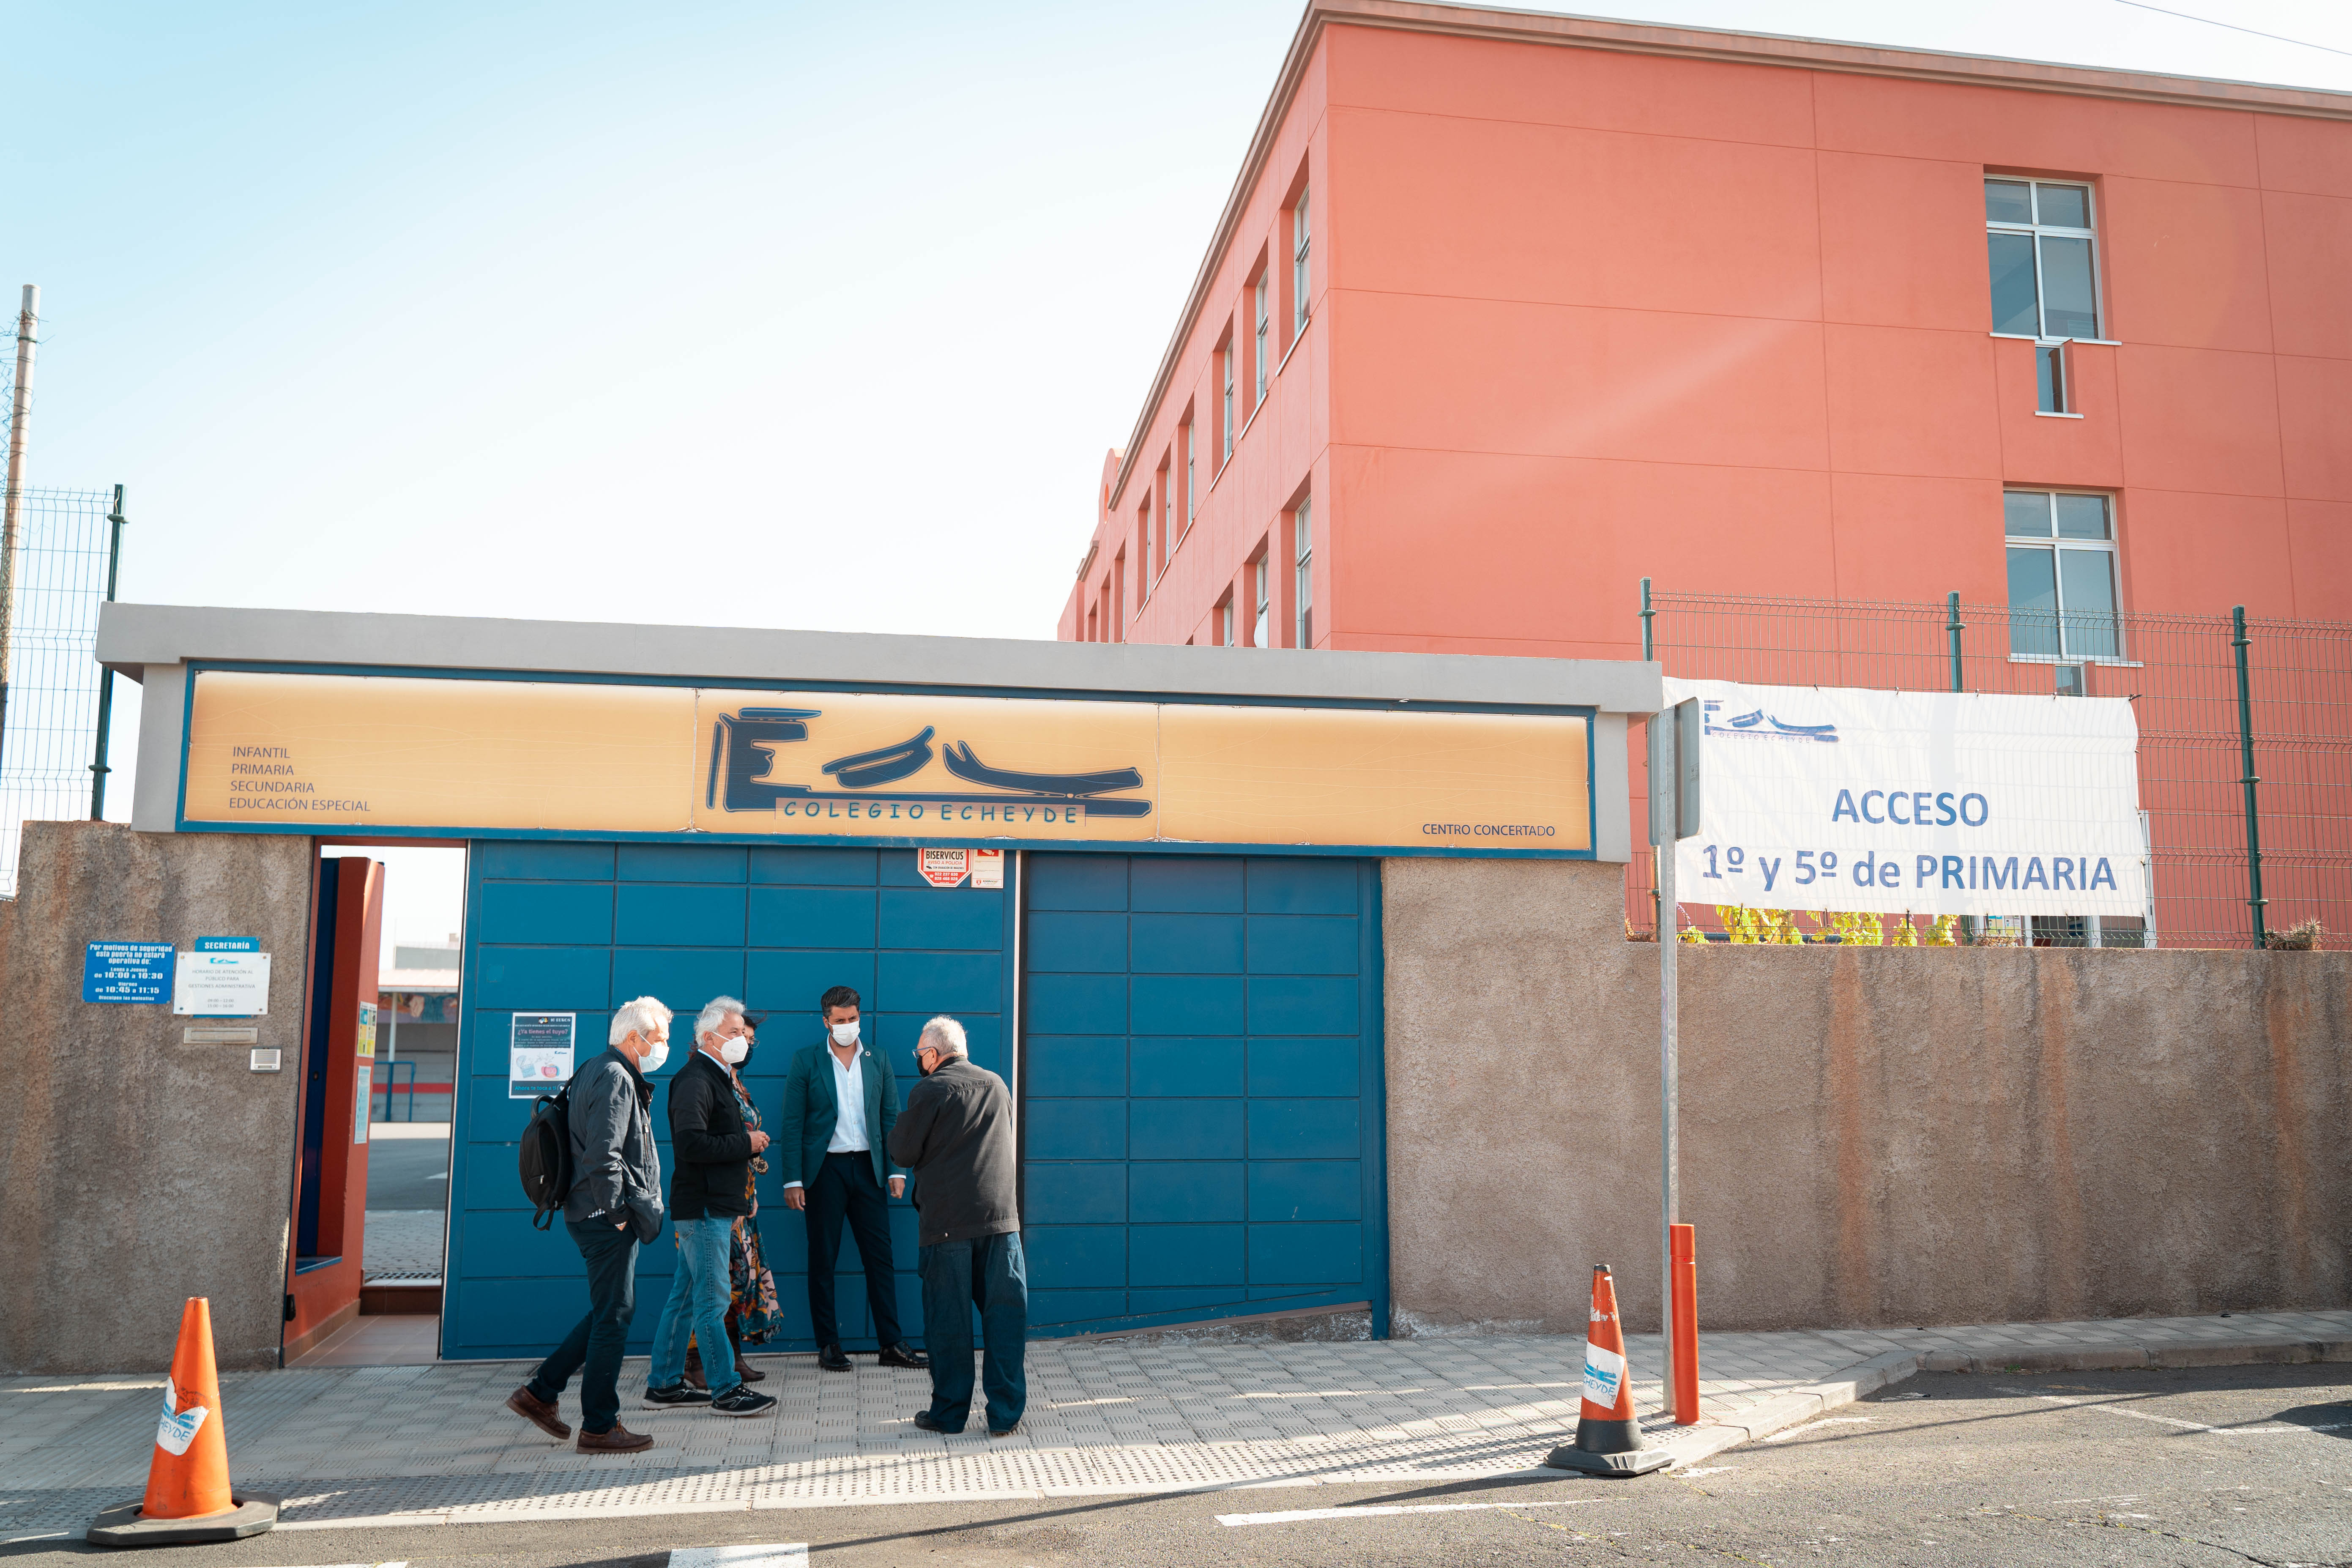 La Laguna mejorará la accesibilidad al Colegio Echeyde II (Tenerife) / CanariasNoticias.es